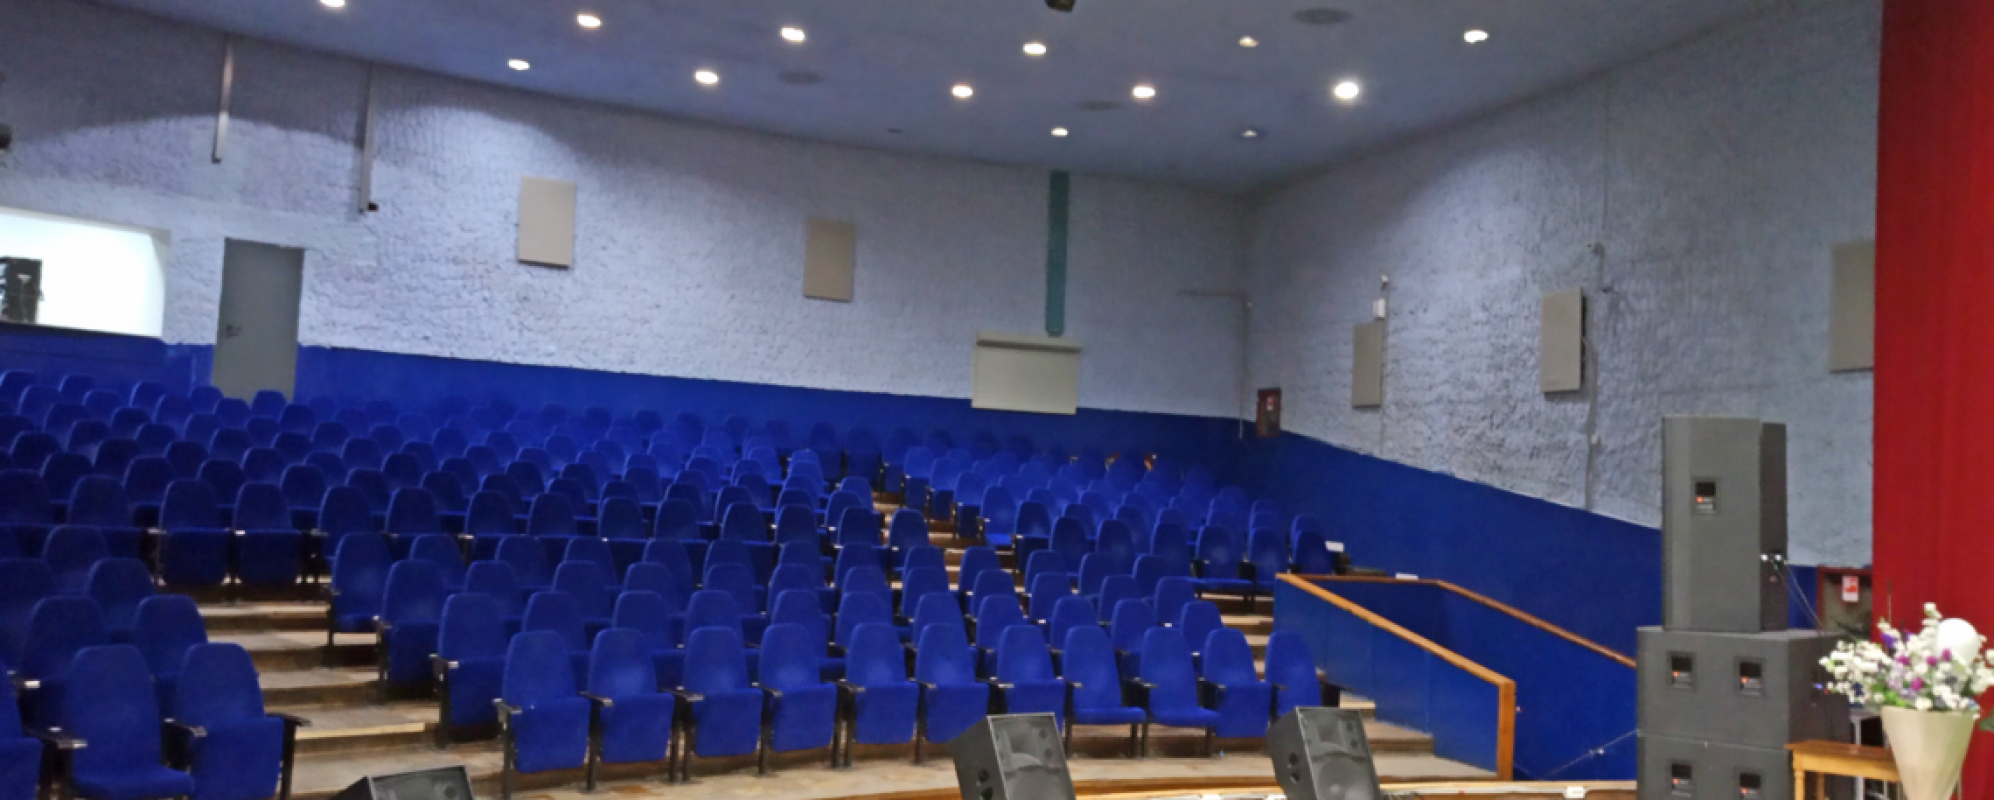 Фотографии концертного зала Большой зал ЦКиД Полярная звезда